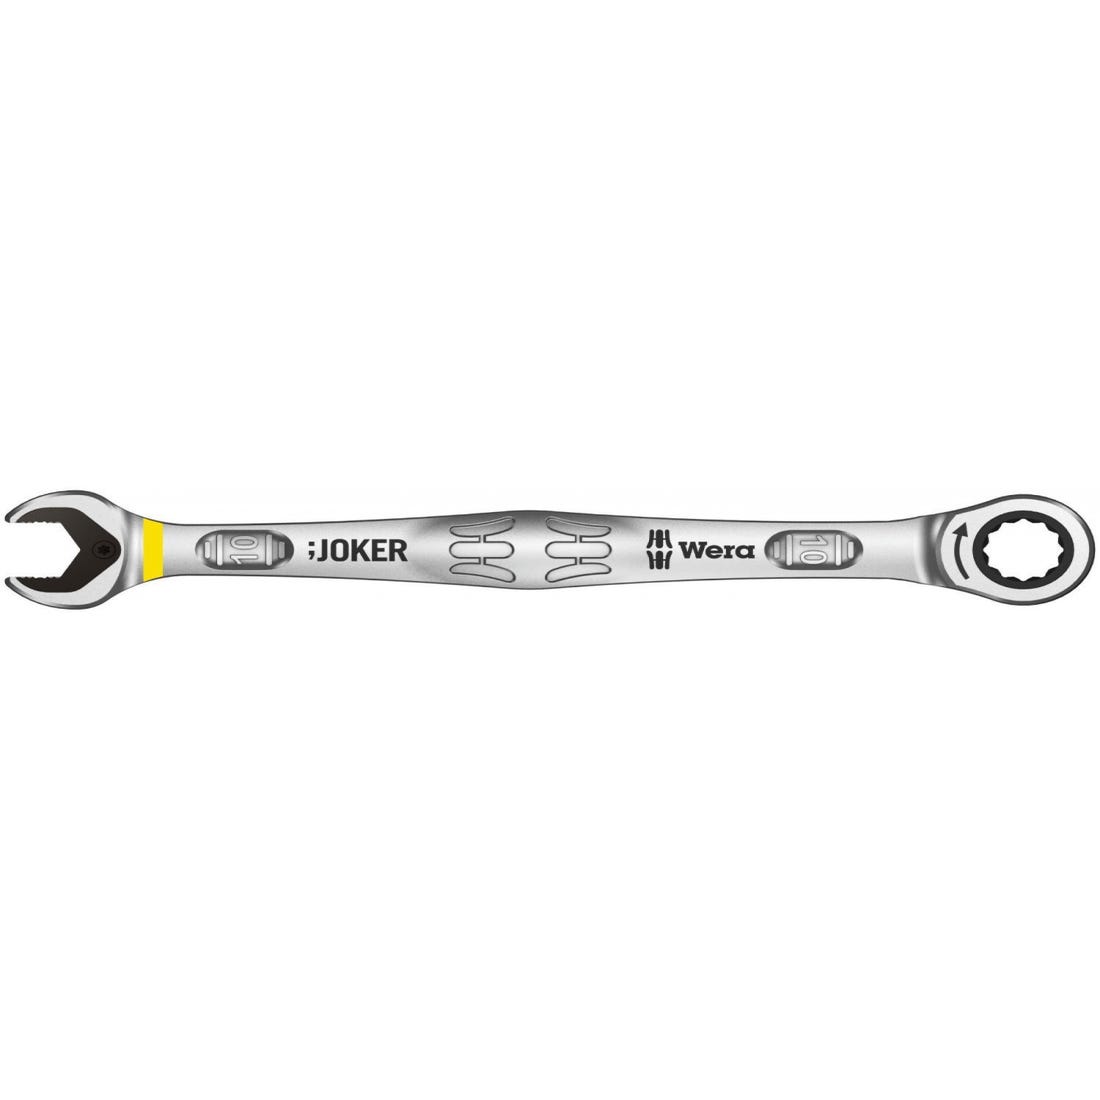 Llave JOKER de boca autoajustable función carraca, sustituye llaves  inglesas y atornilladores, marca WERA, de varias medidas: XS (10-7mm) S  (13-10mm) M (16-13mm) L (19-16mm) XL (24-19mm) XXL (24-32mm) - AliExpress